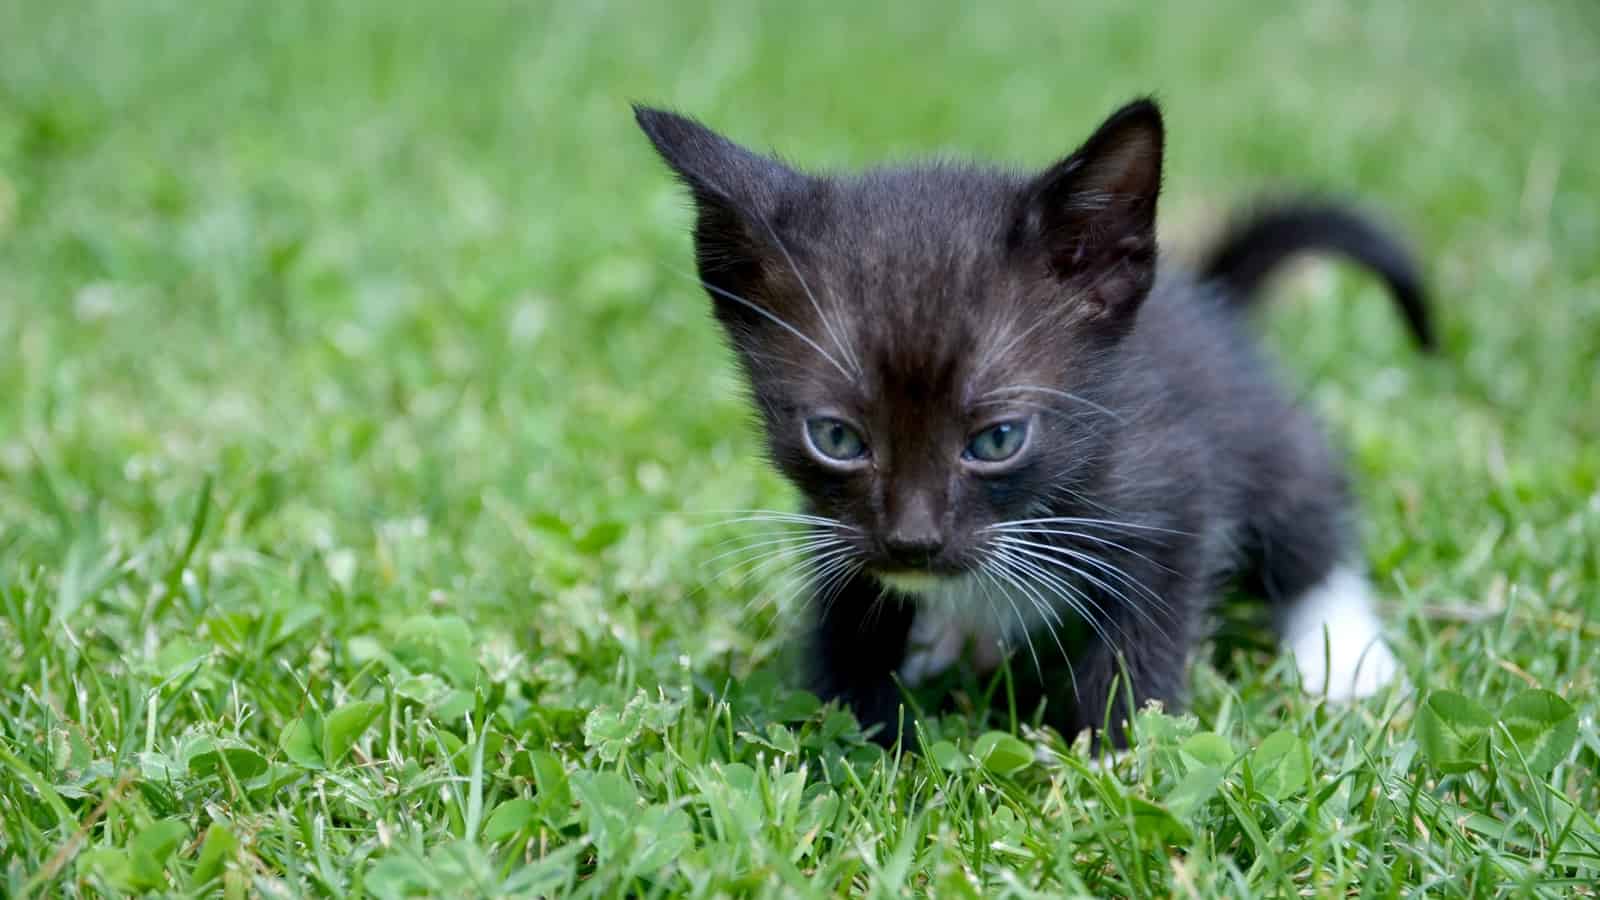 Cute fluffy black white kitten on green grass background